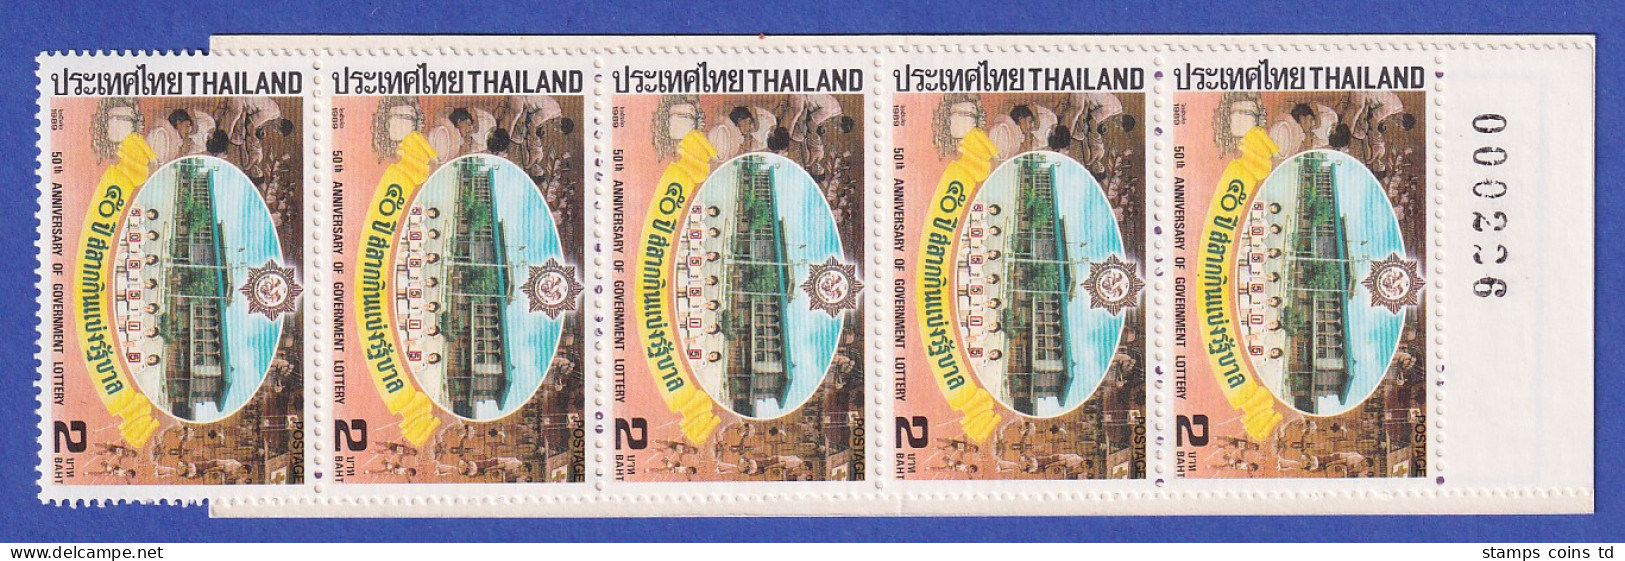 Thailand 1989 Staatliches Lotteriebüro Mi.-Nr. 1309 Markenheftchen ** / MNH - Thaïlande